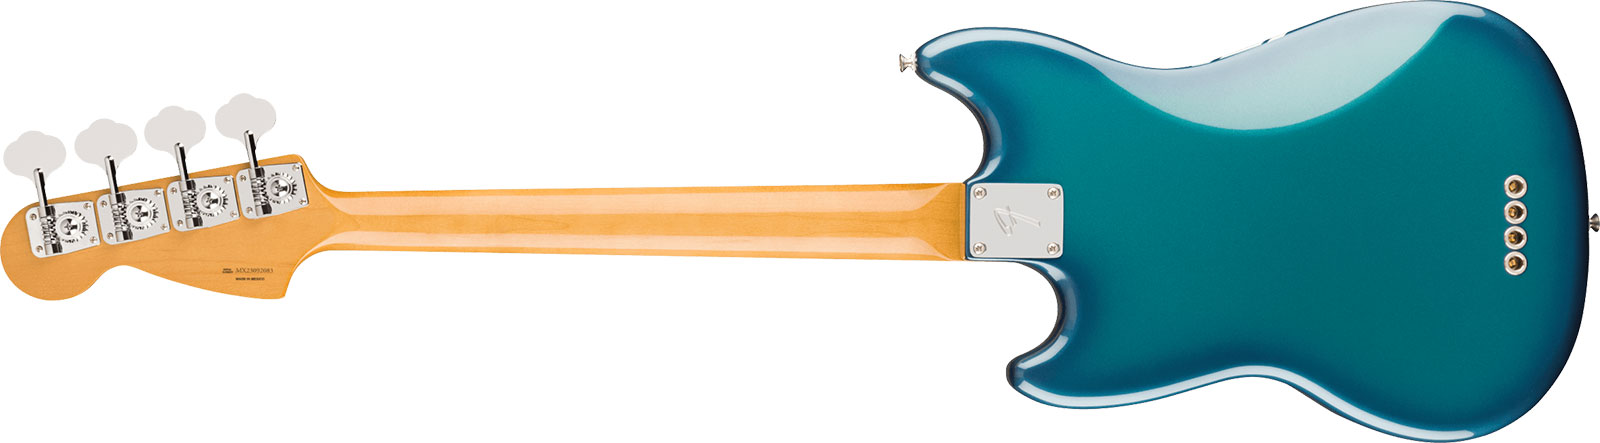 Fender Mustang Bass 70s Competition Vintera 2 Rw - Competition Blue - Bajo eléctrico de cuerpo sólido - Variation 1